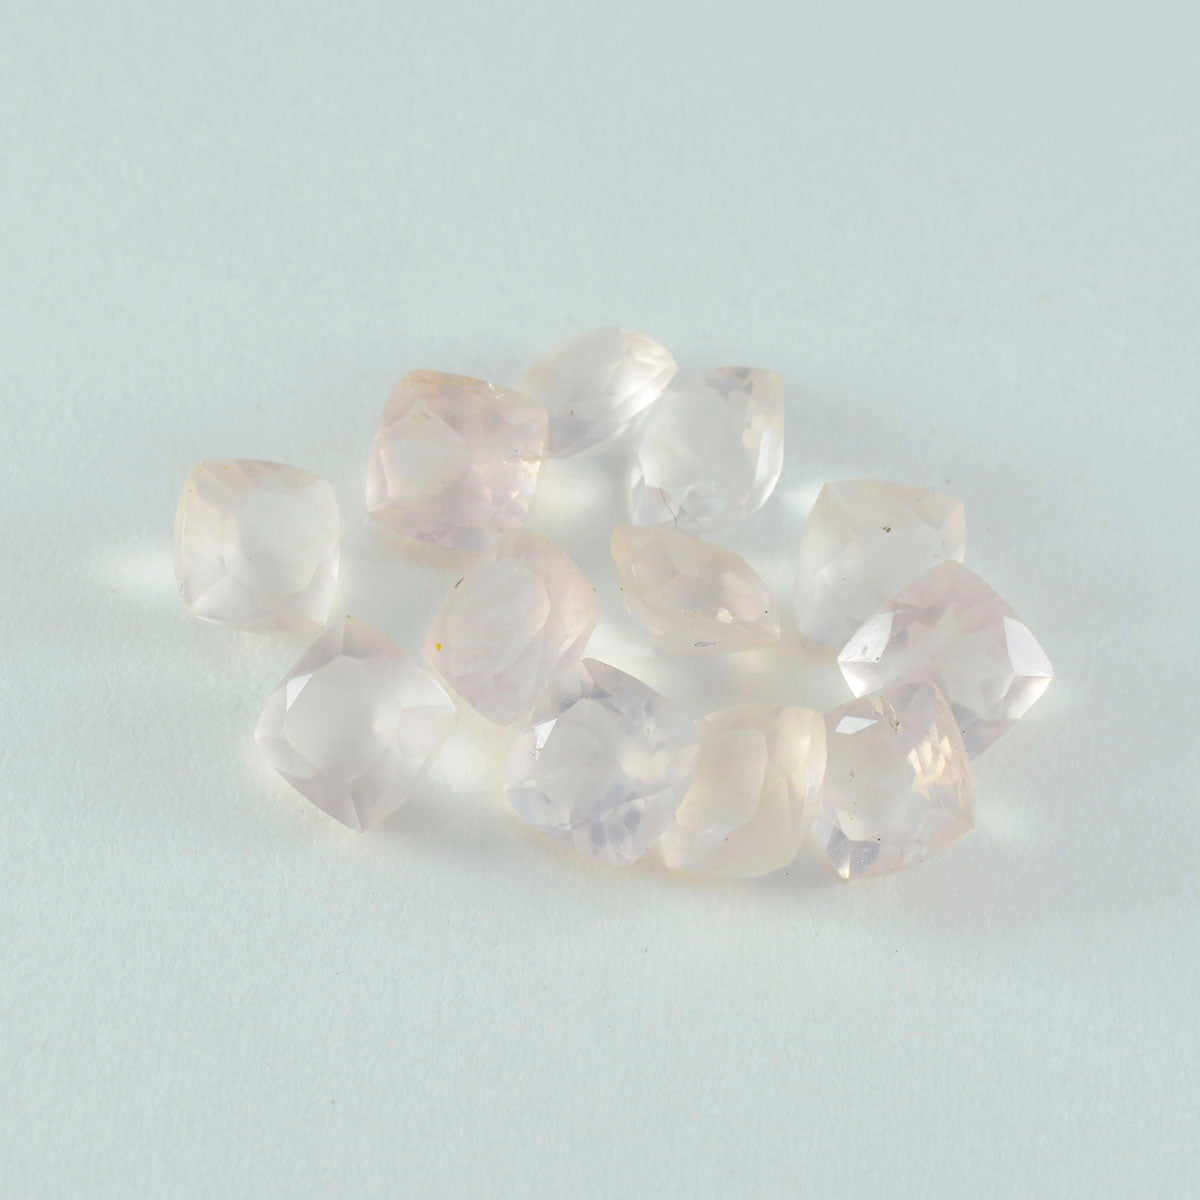 Riyogems 1 pièce de quartz rose à facettes 5x5mm en forme de coussin, belle gemme de qualité